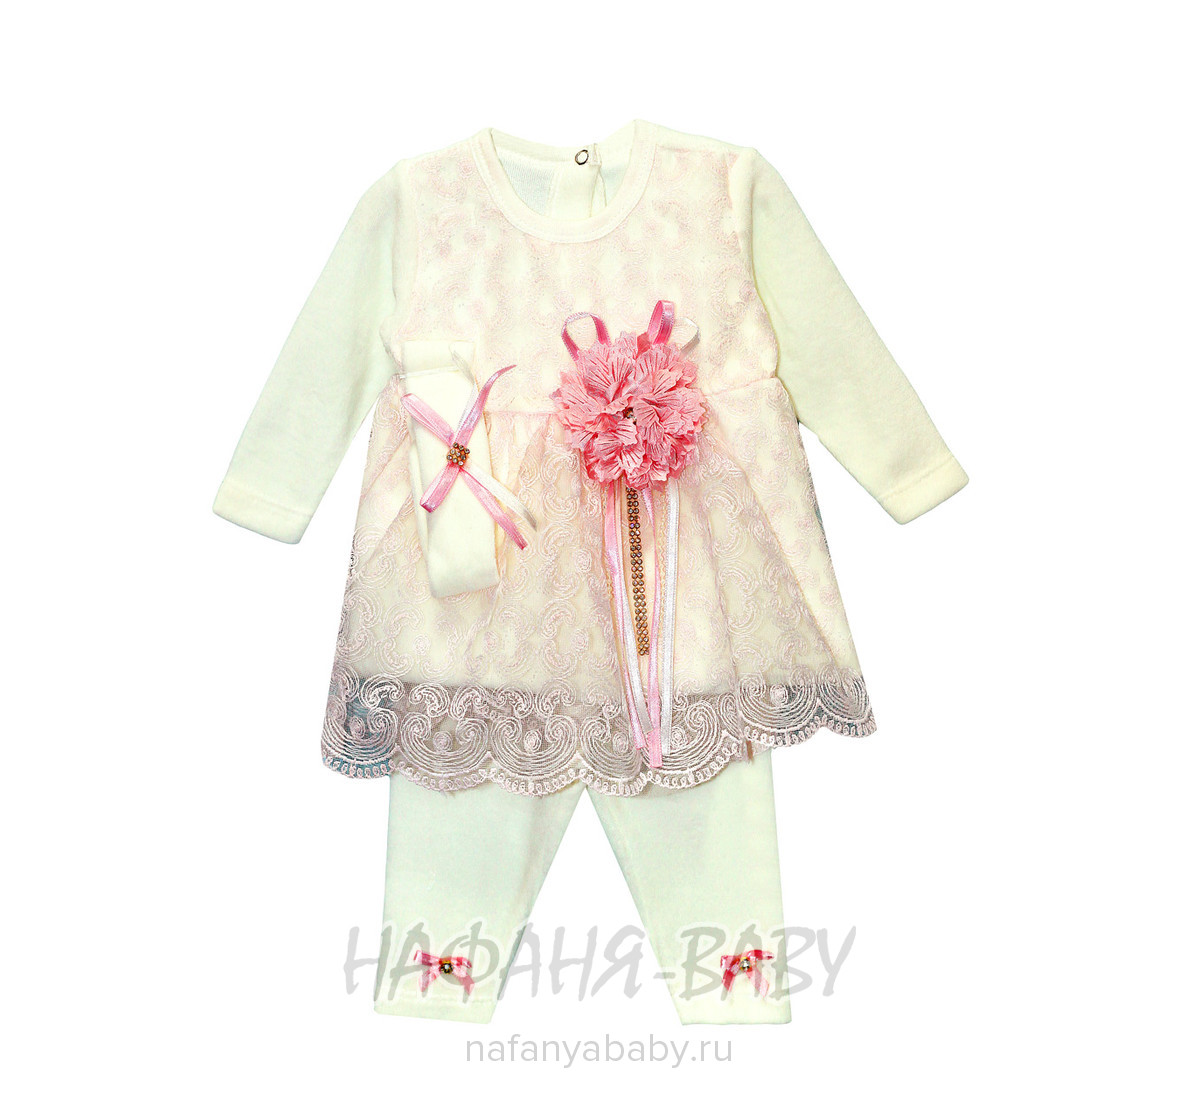 Детский костюм для новорожденных FINDIK арт: 69001, 0-12 мес, цвет молочный с розовым, оптом Турция